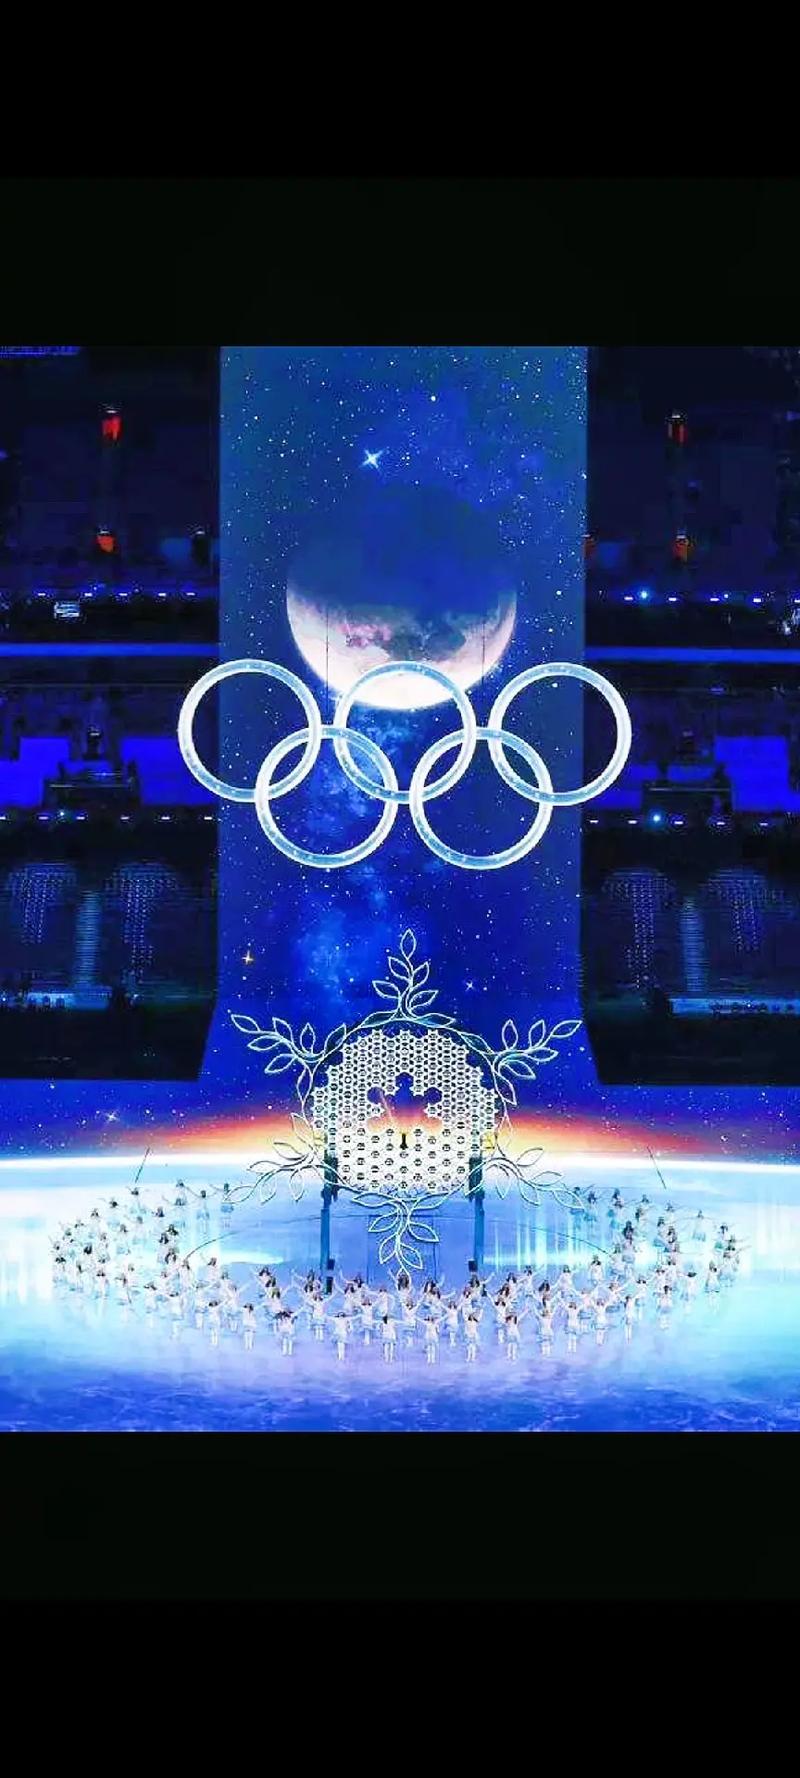 2022北京冬奥会开幕式音乐